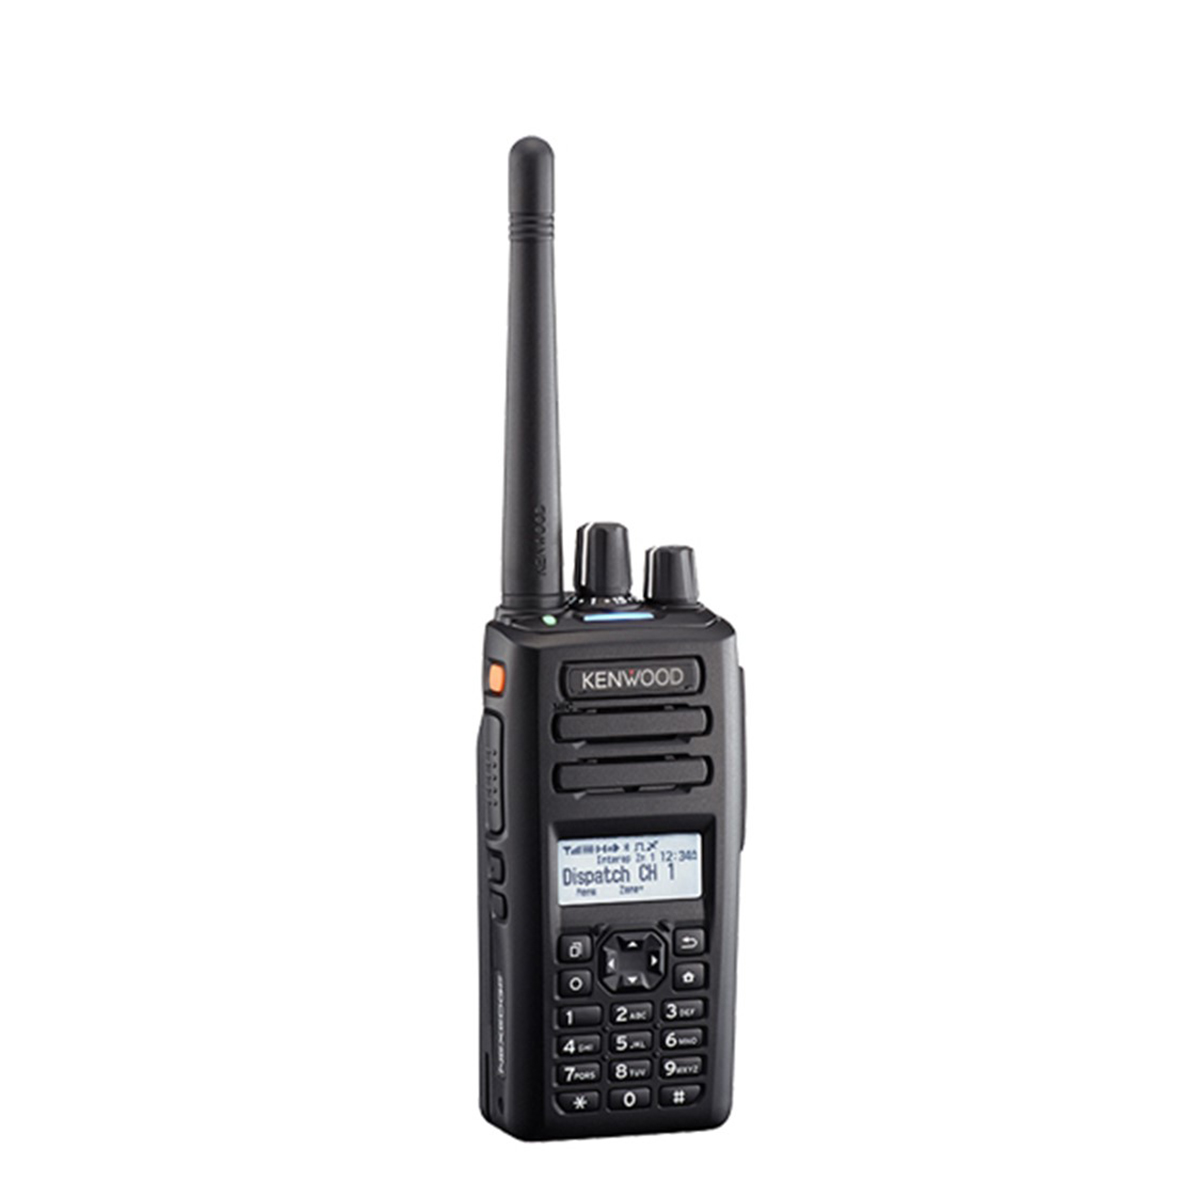 Radio KENWOOD NX-3200 Digital VHF 136-174 MHz con Pantalla y Teclado Completo